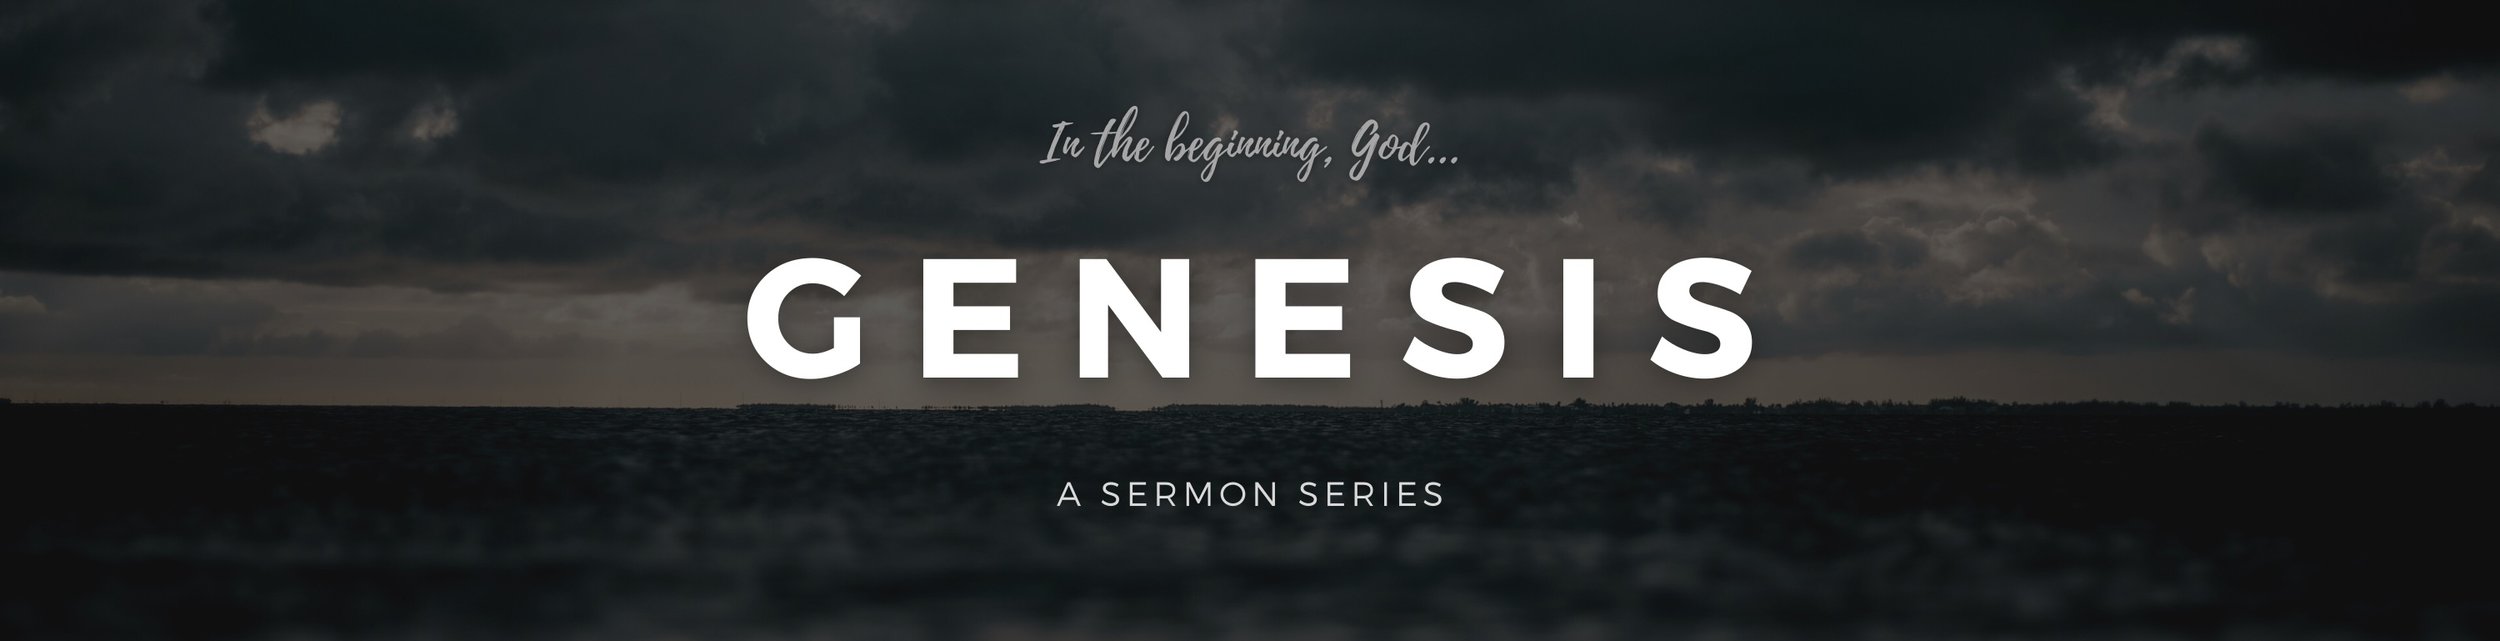 Genesis Sermon Series (banner) copy.jpg